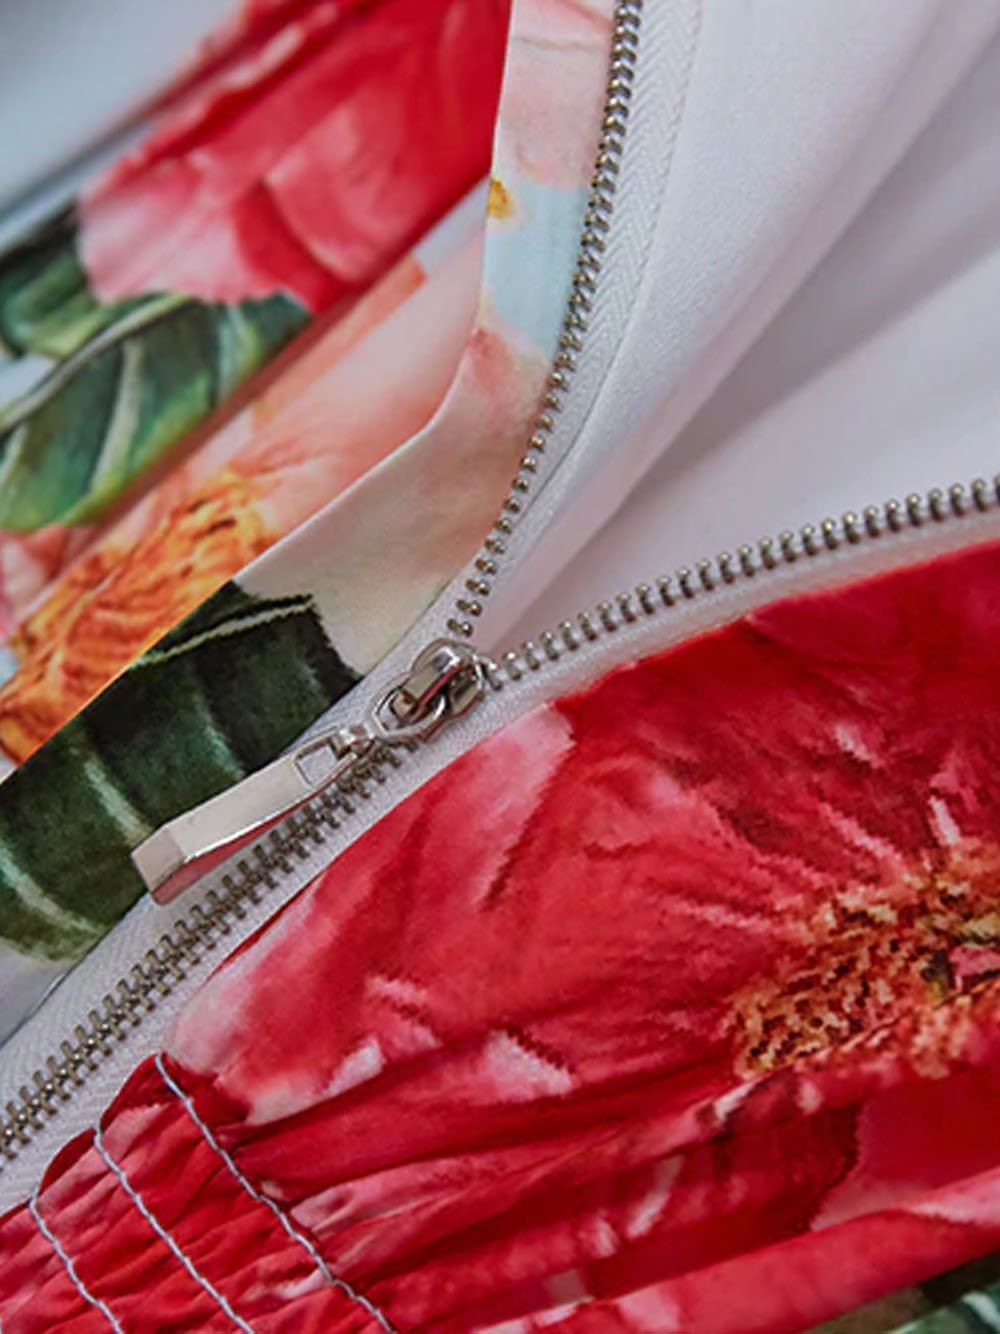 ROSALE Floral Maxi Dress